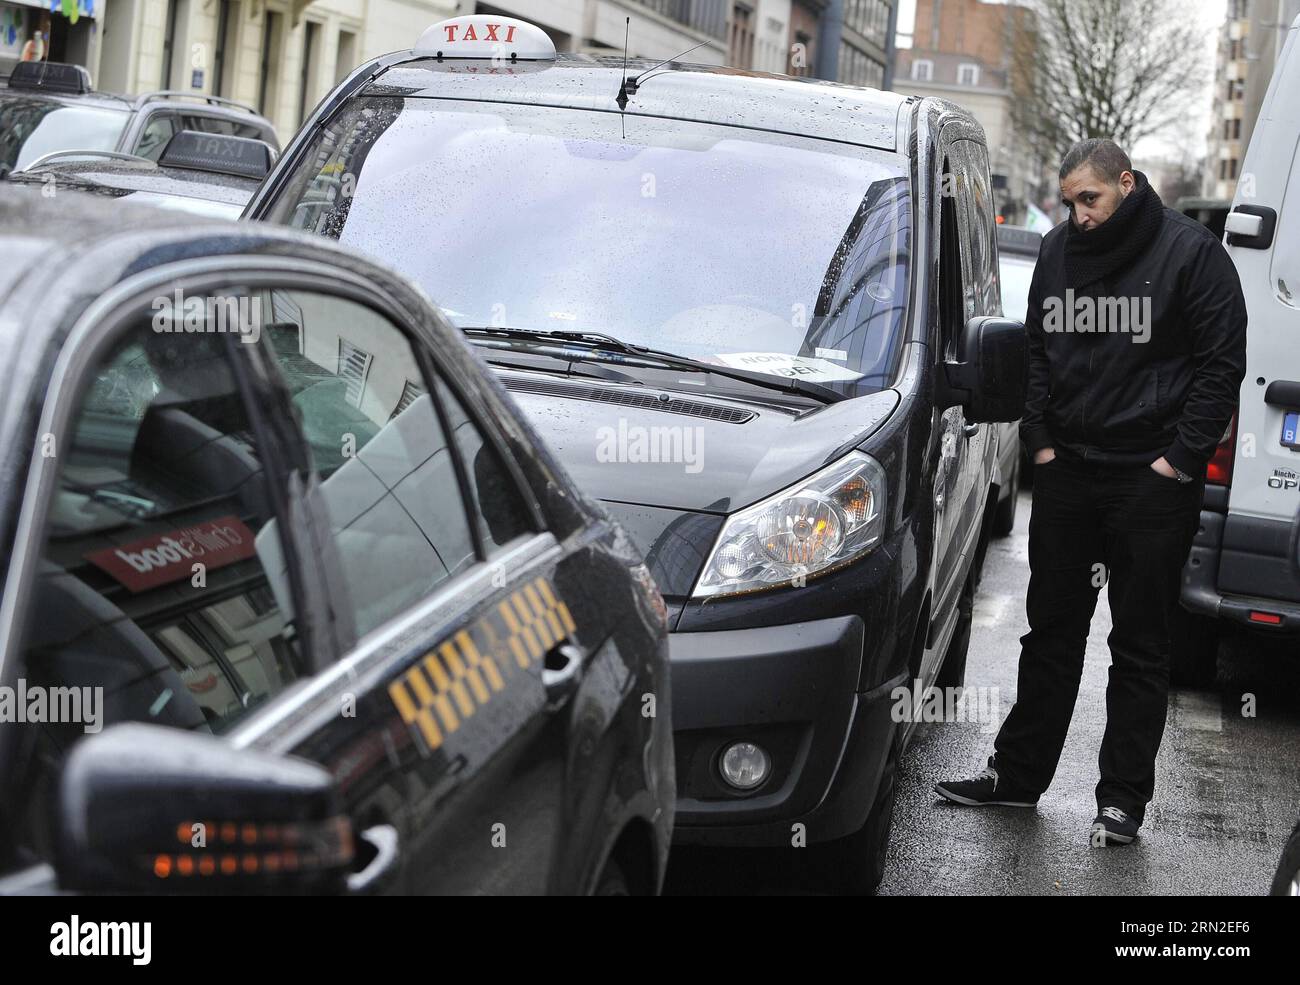 (150303) -- BRUXELLES, 3 marzo 2015 -- Un tassista sta vicino alla sua auto in una strada di fronte alla sede centrale dell'UE durante uno sciopero dei tassisti contro la società di condivisione di viaggi online Uber a Bruxelles, capitale del Belgio, 3 marzo 2015. ) BELGIO-BRUXELLES-TAXI-STRIKE YexPingfan PUBLICATIONxNOTxINxCHN Bruxelles 3 marzo 2015 un autista di taxi si trova accanto alla sua auto IN una strada di fronte alla sede centrale dell'UE durante un taxi Drivers Strike Against Online Ride Sharing Company sopra a Bruxelles capitale del Belgio 3 marzo 2015 Belgio Bruxelles taxi Strike PUBLICATIONxINxCHN Foto Stock